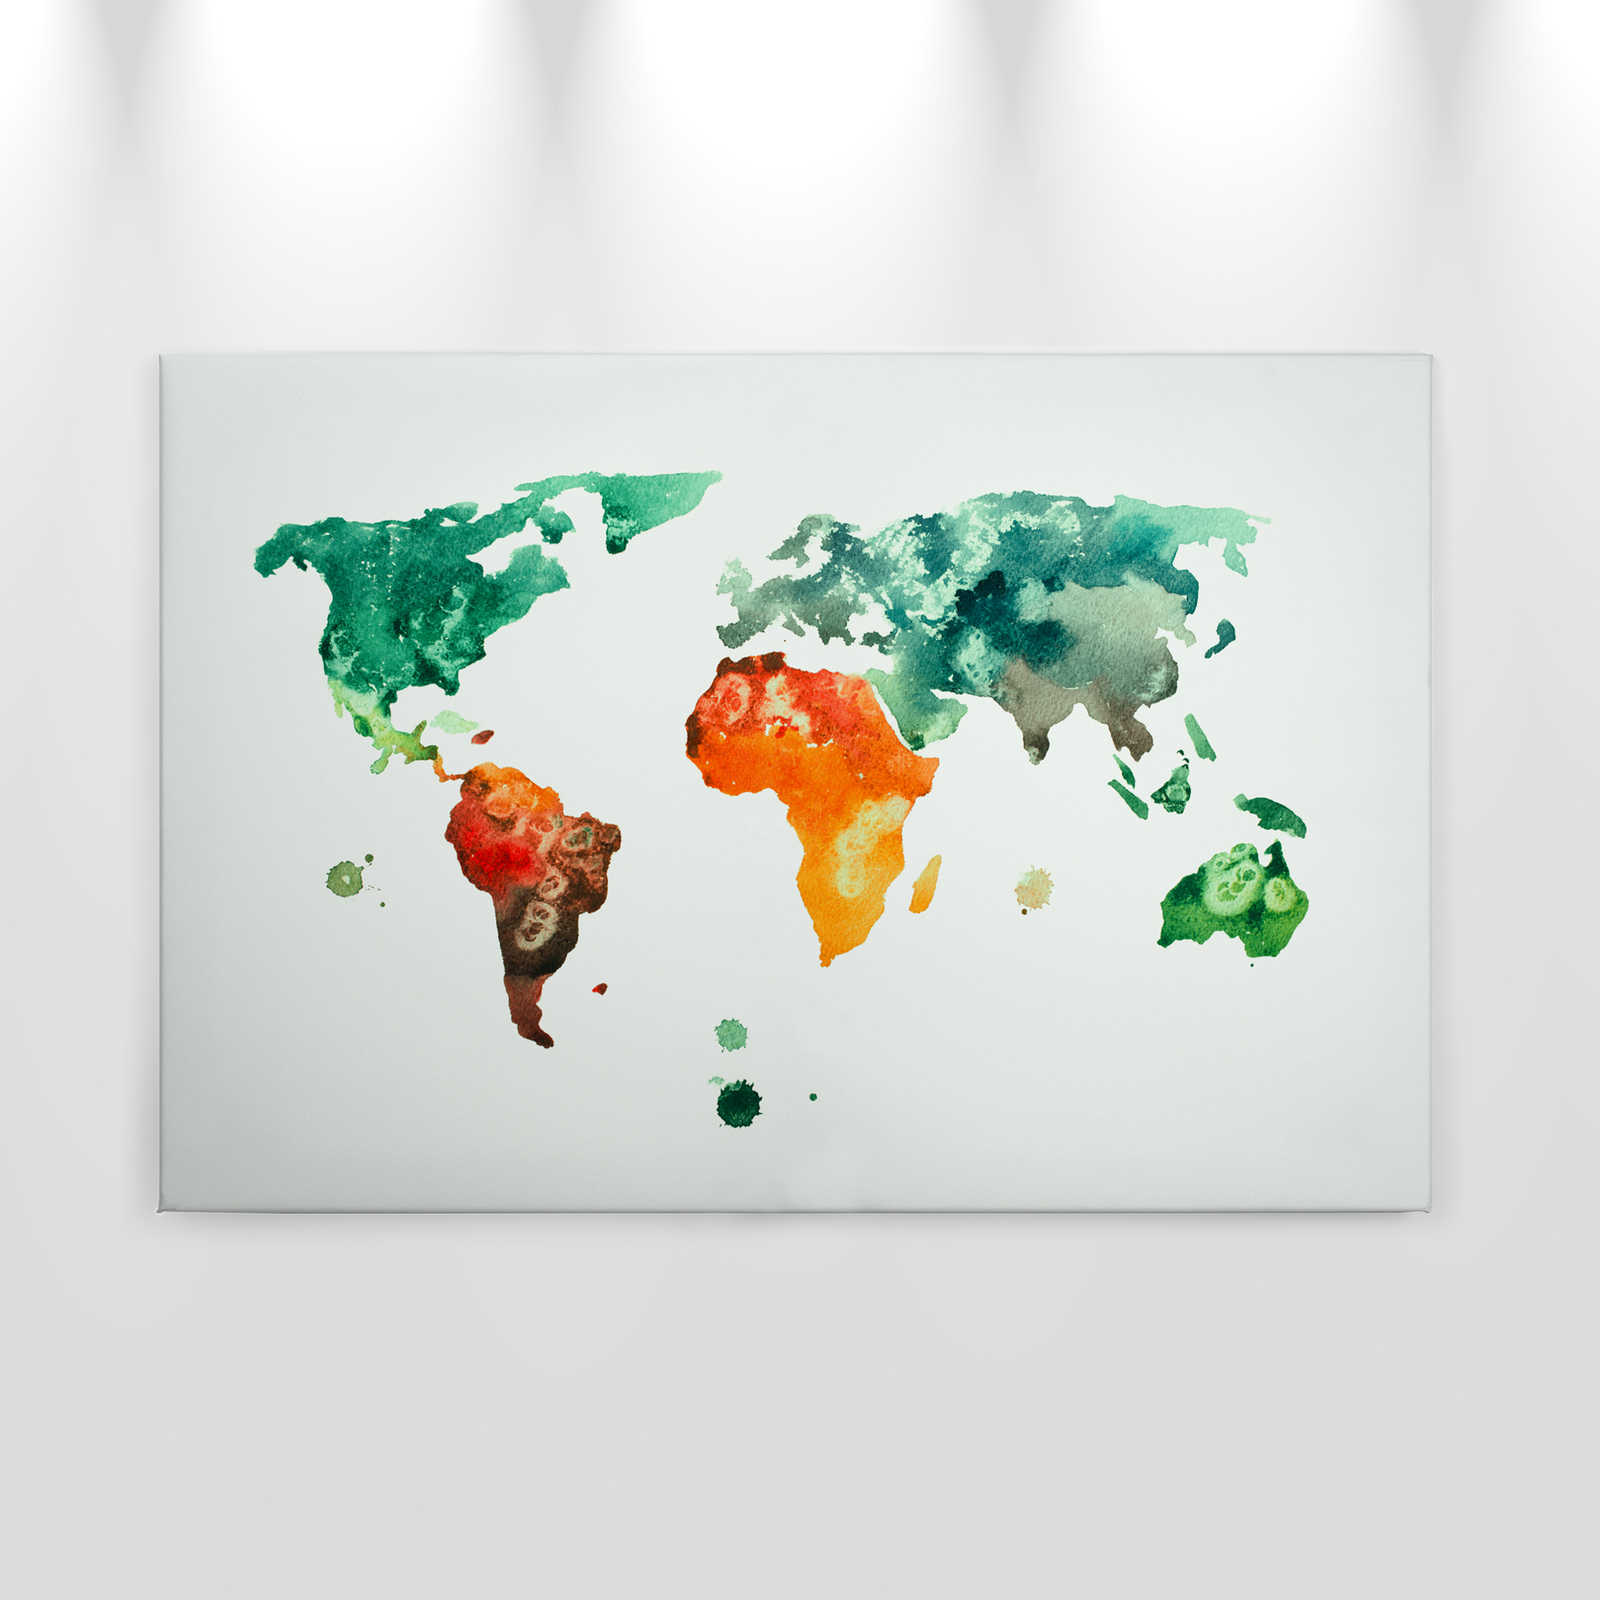             Weltkarten Leinwand Wasserfarben – 0,90 m x 0,60 m
        